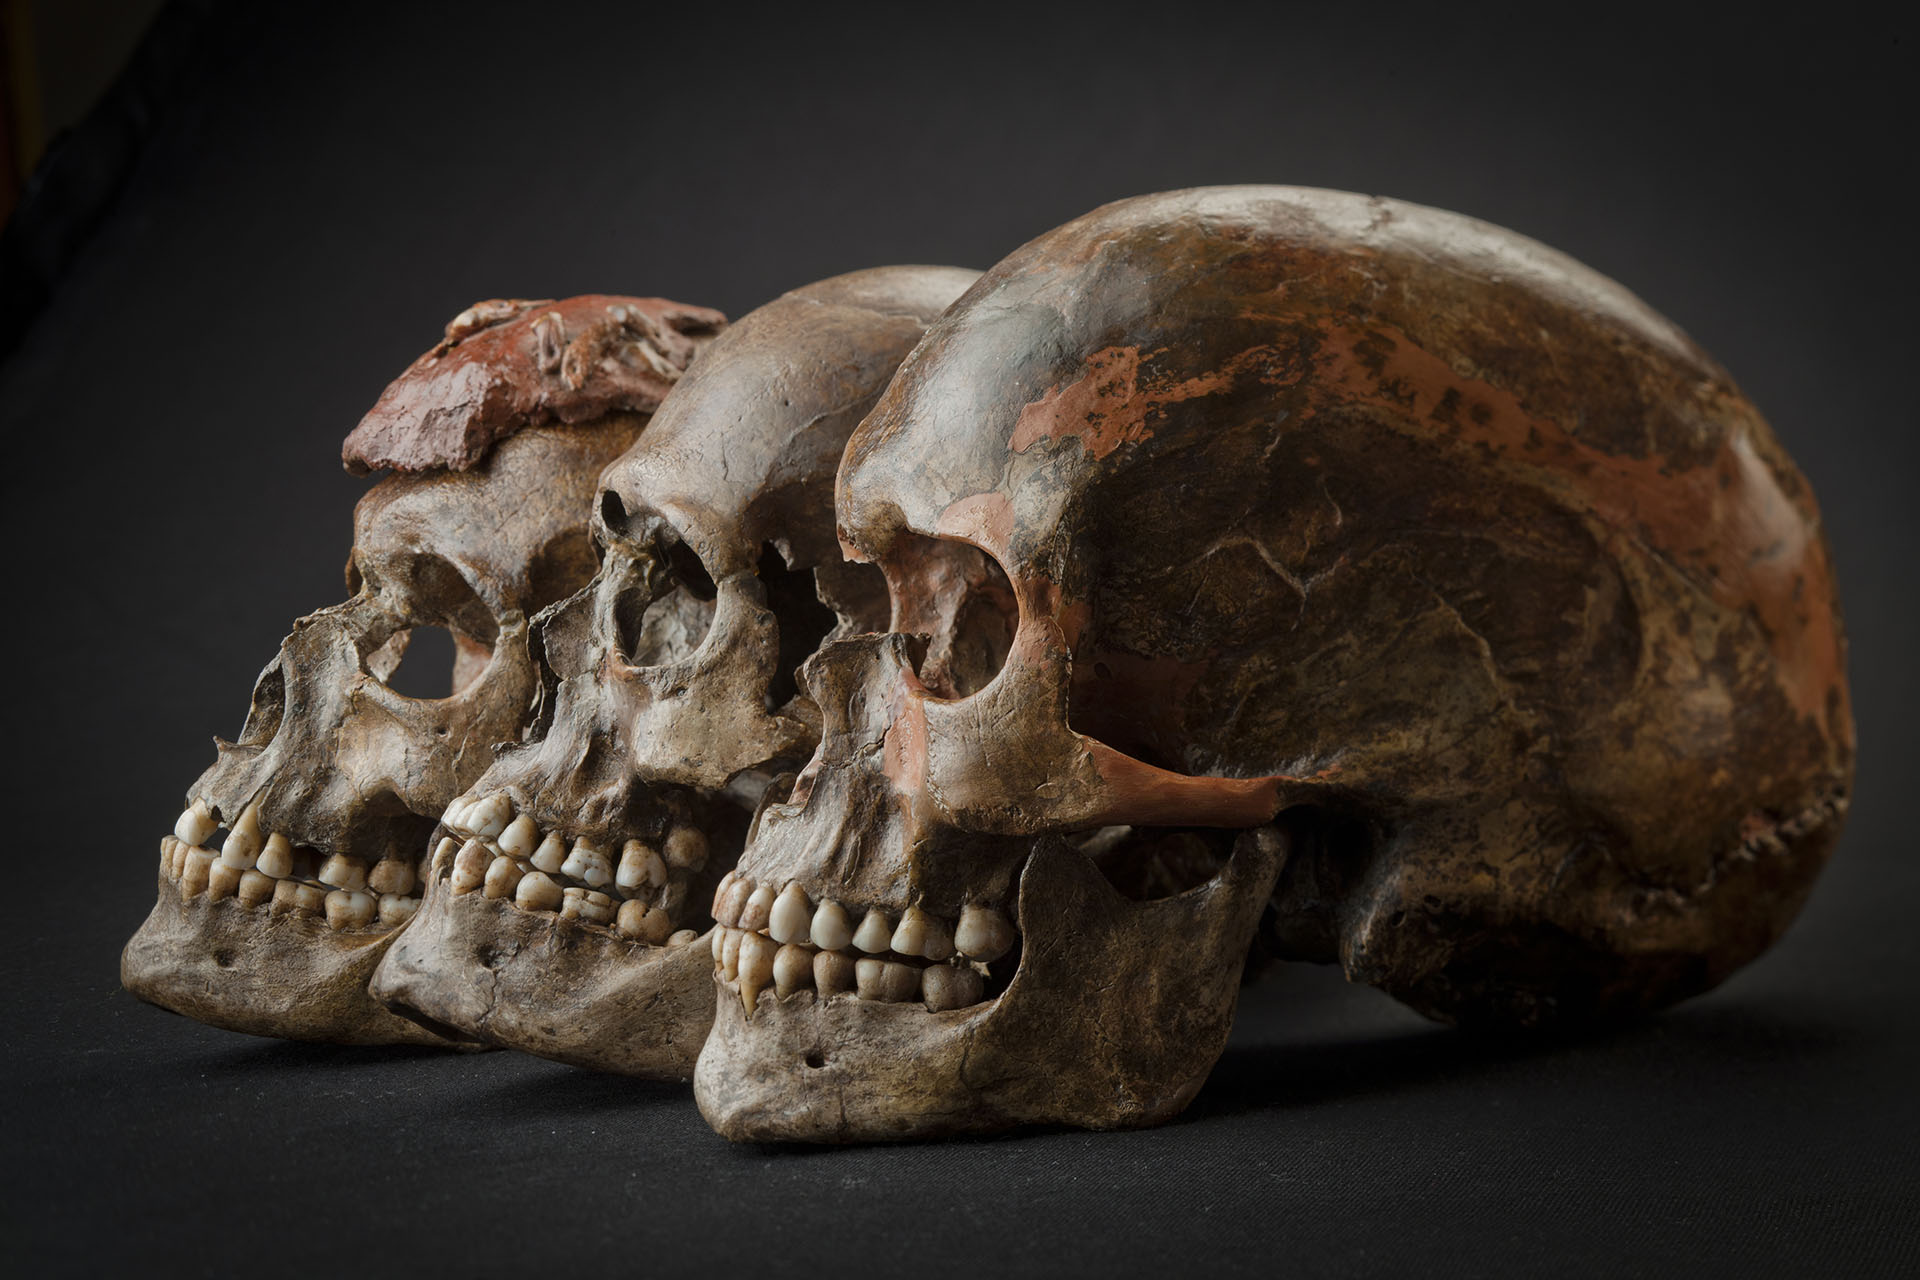 Skládáme mozaiku poznání o prvních zástupcích anatomicky moderního člověka v Evropě